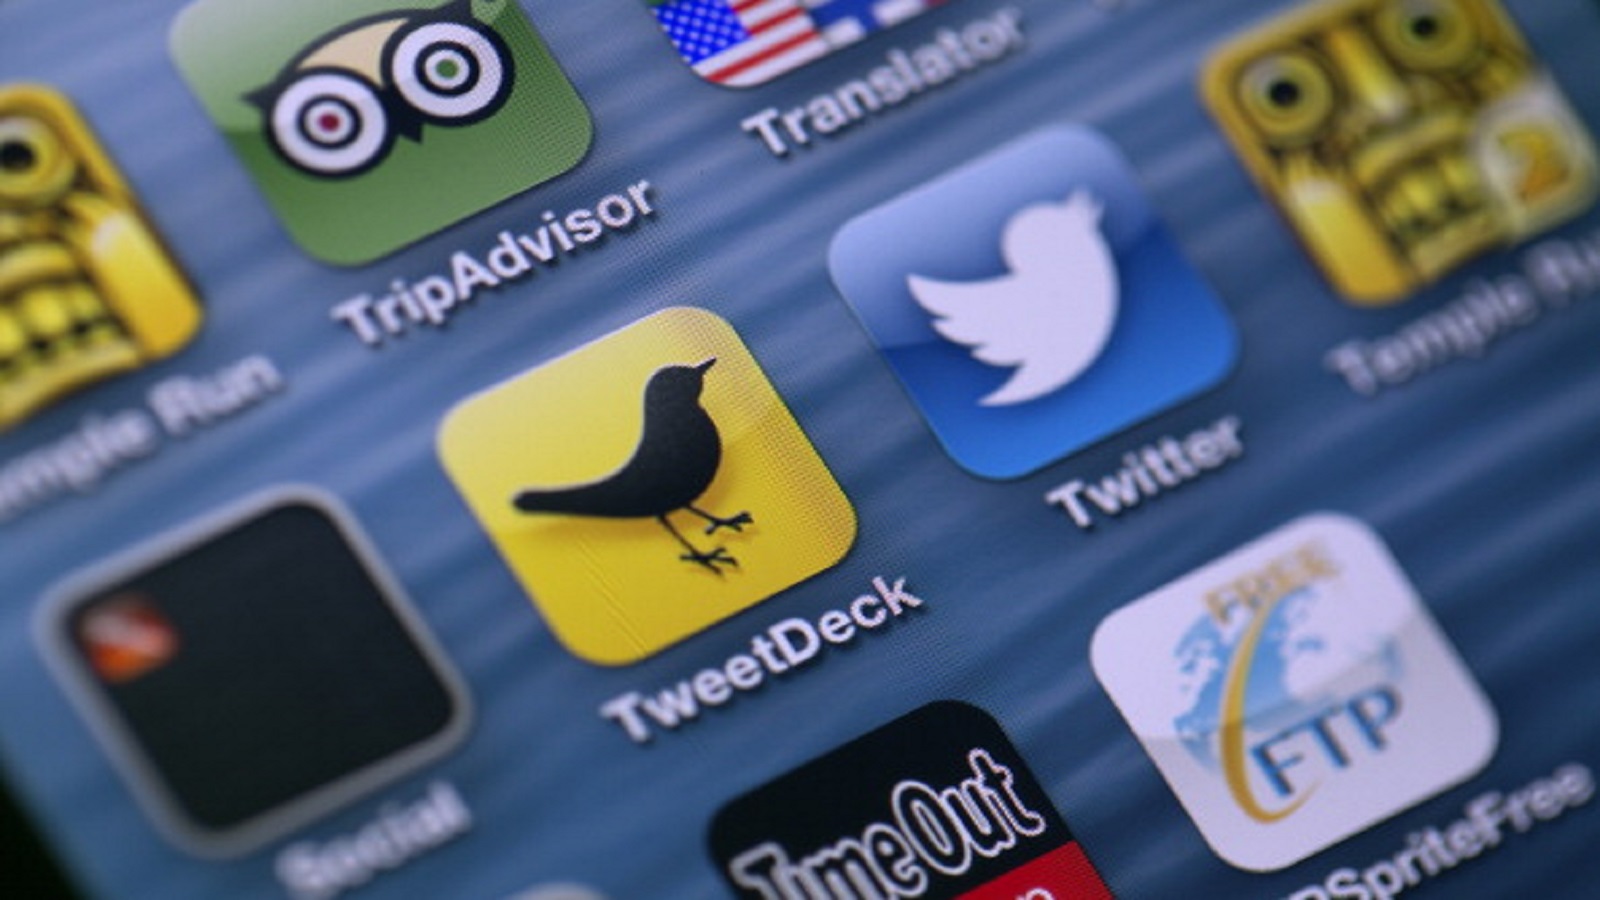 "تويتر" يرصد تطبيقات هواتف مستخدميه